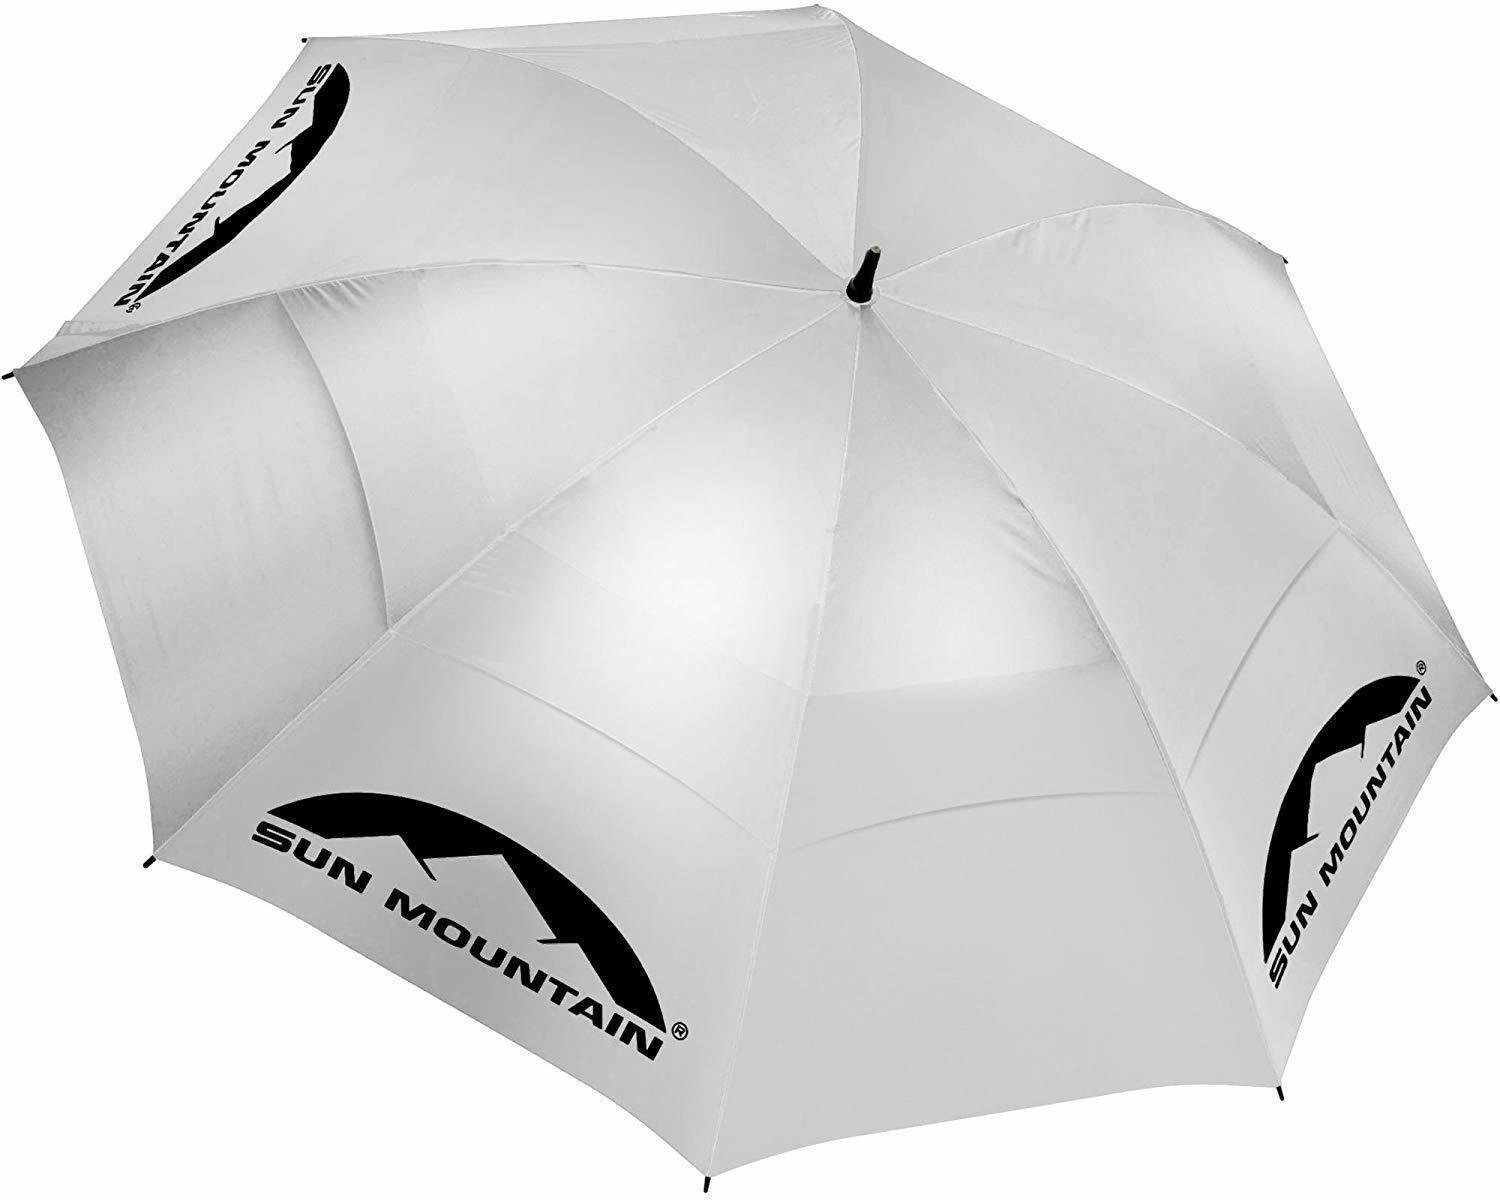 Paraguas Sun Mountain UV Canopy Umbrella Silver